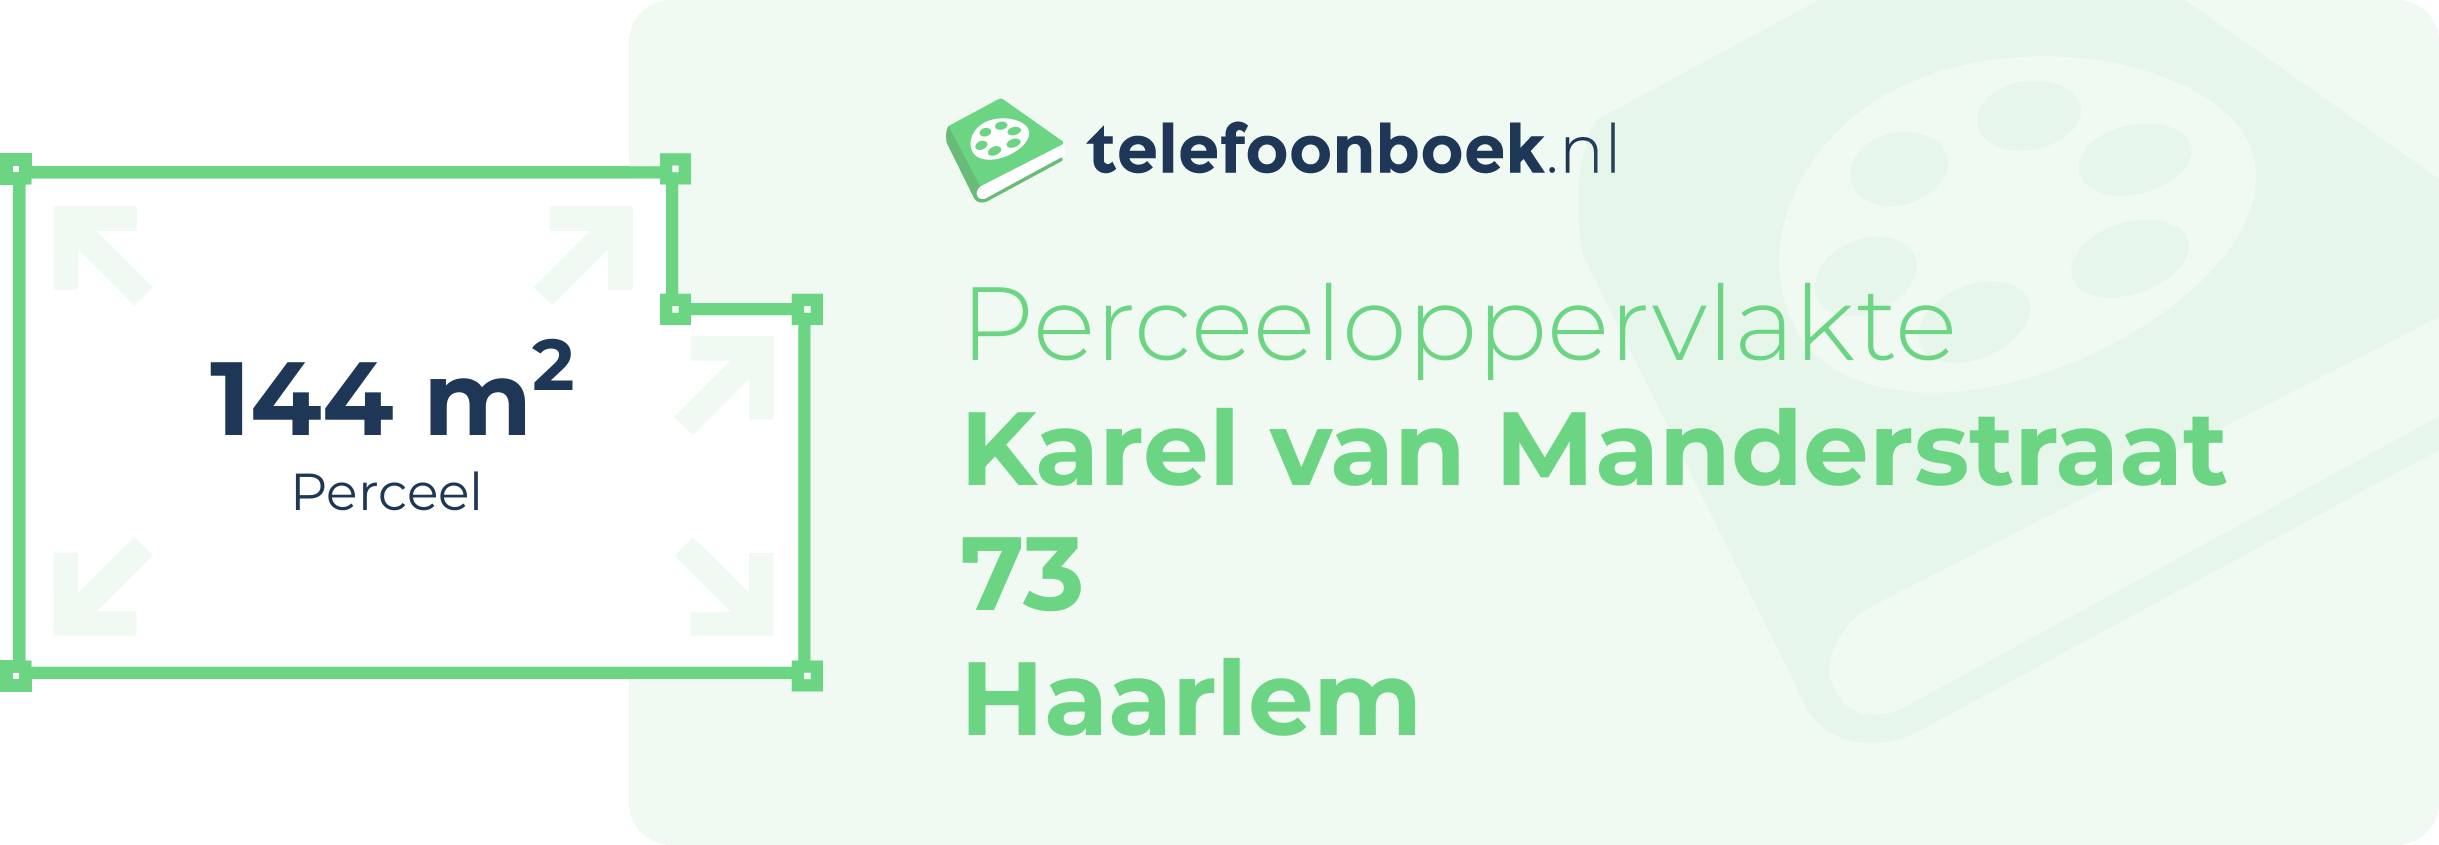 Perceeloppervlakte Karel Van Manderstraat 73 Haarlem